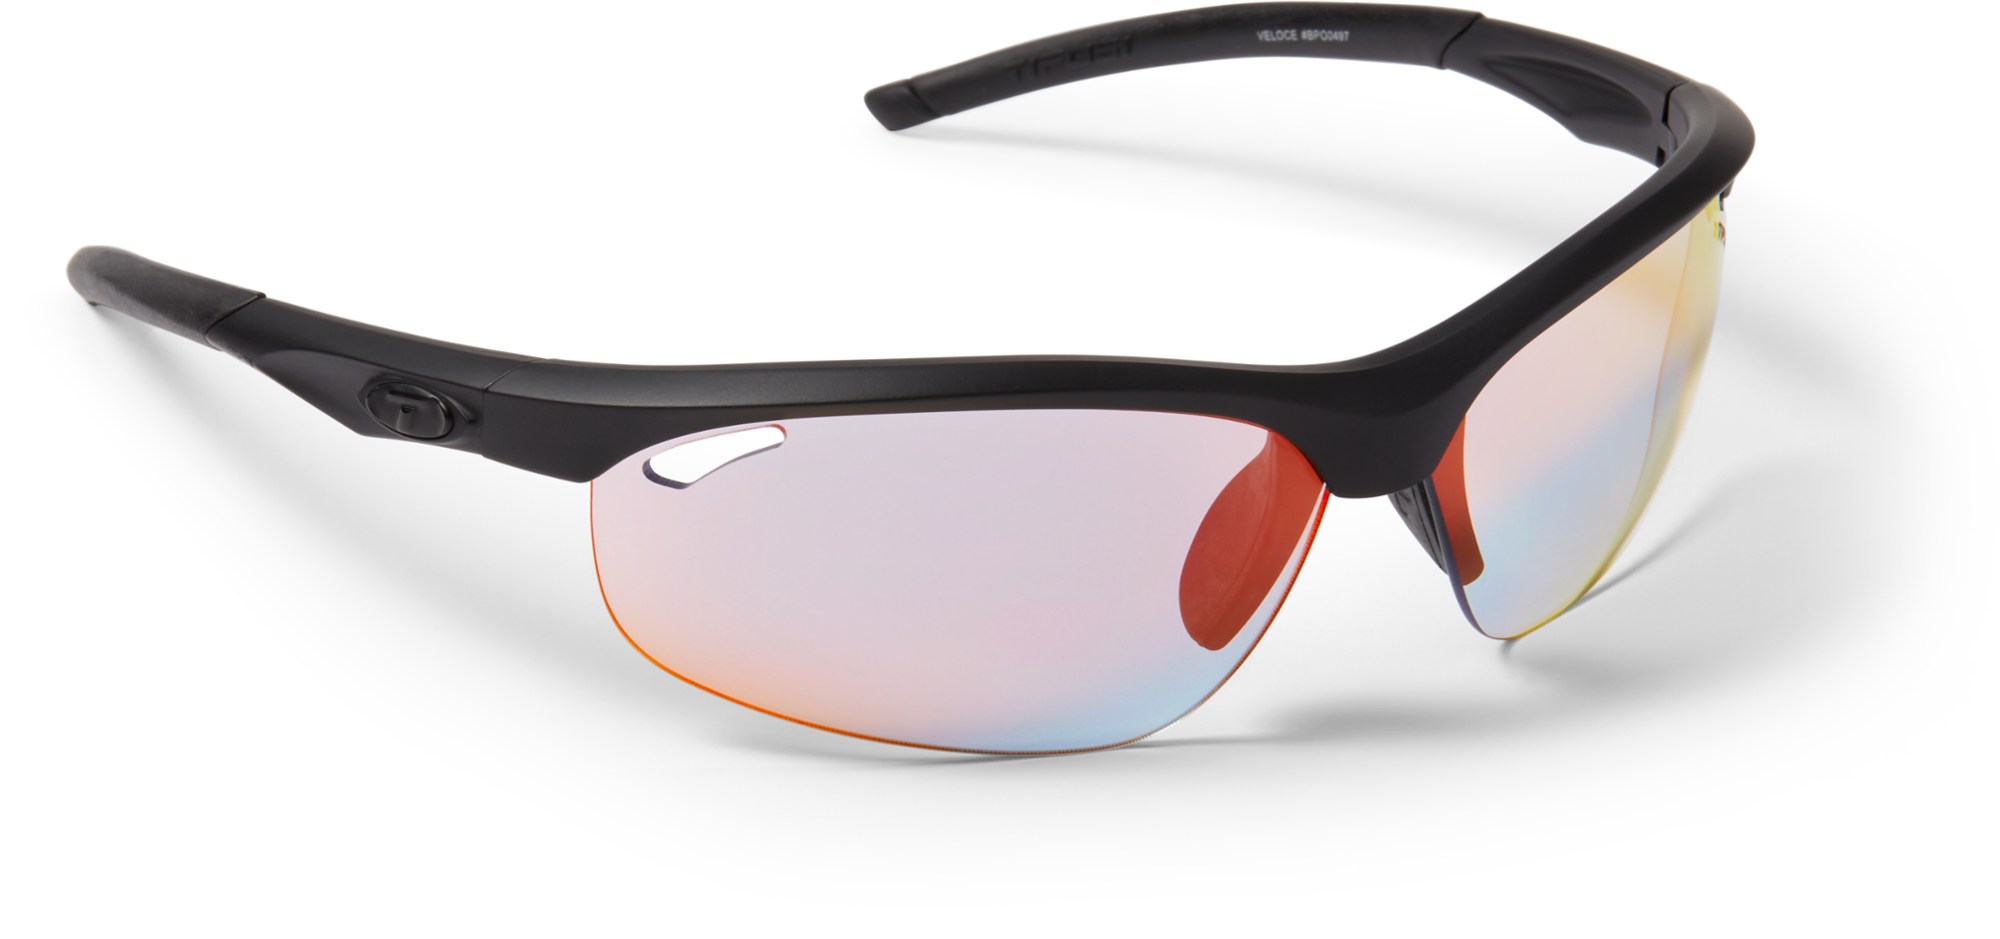 Фотохромные солнцезащитные очки Veloce Fototec Tifosi, черный солнцезащитные очки veloce golf tifosi optics цвет gloss black frame enliven golf lens